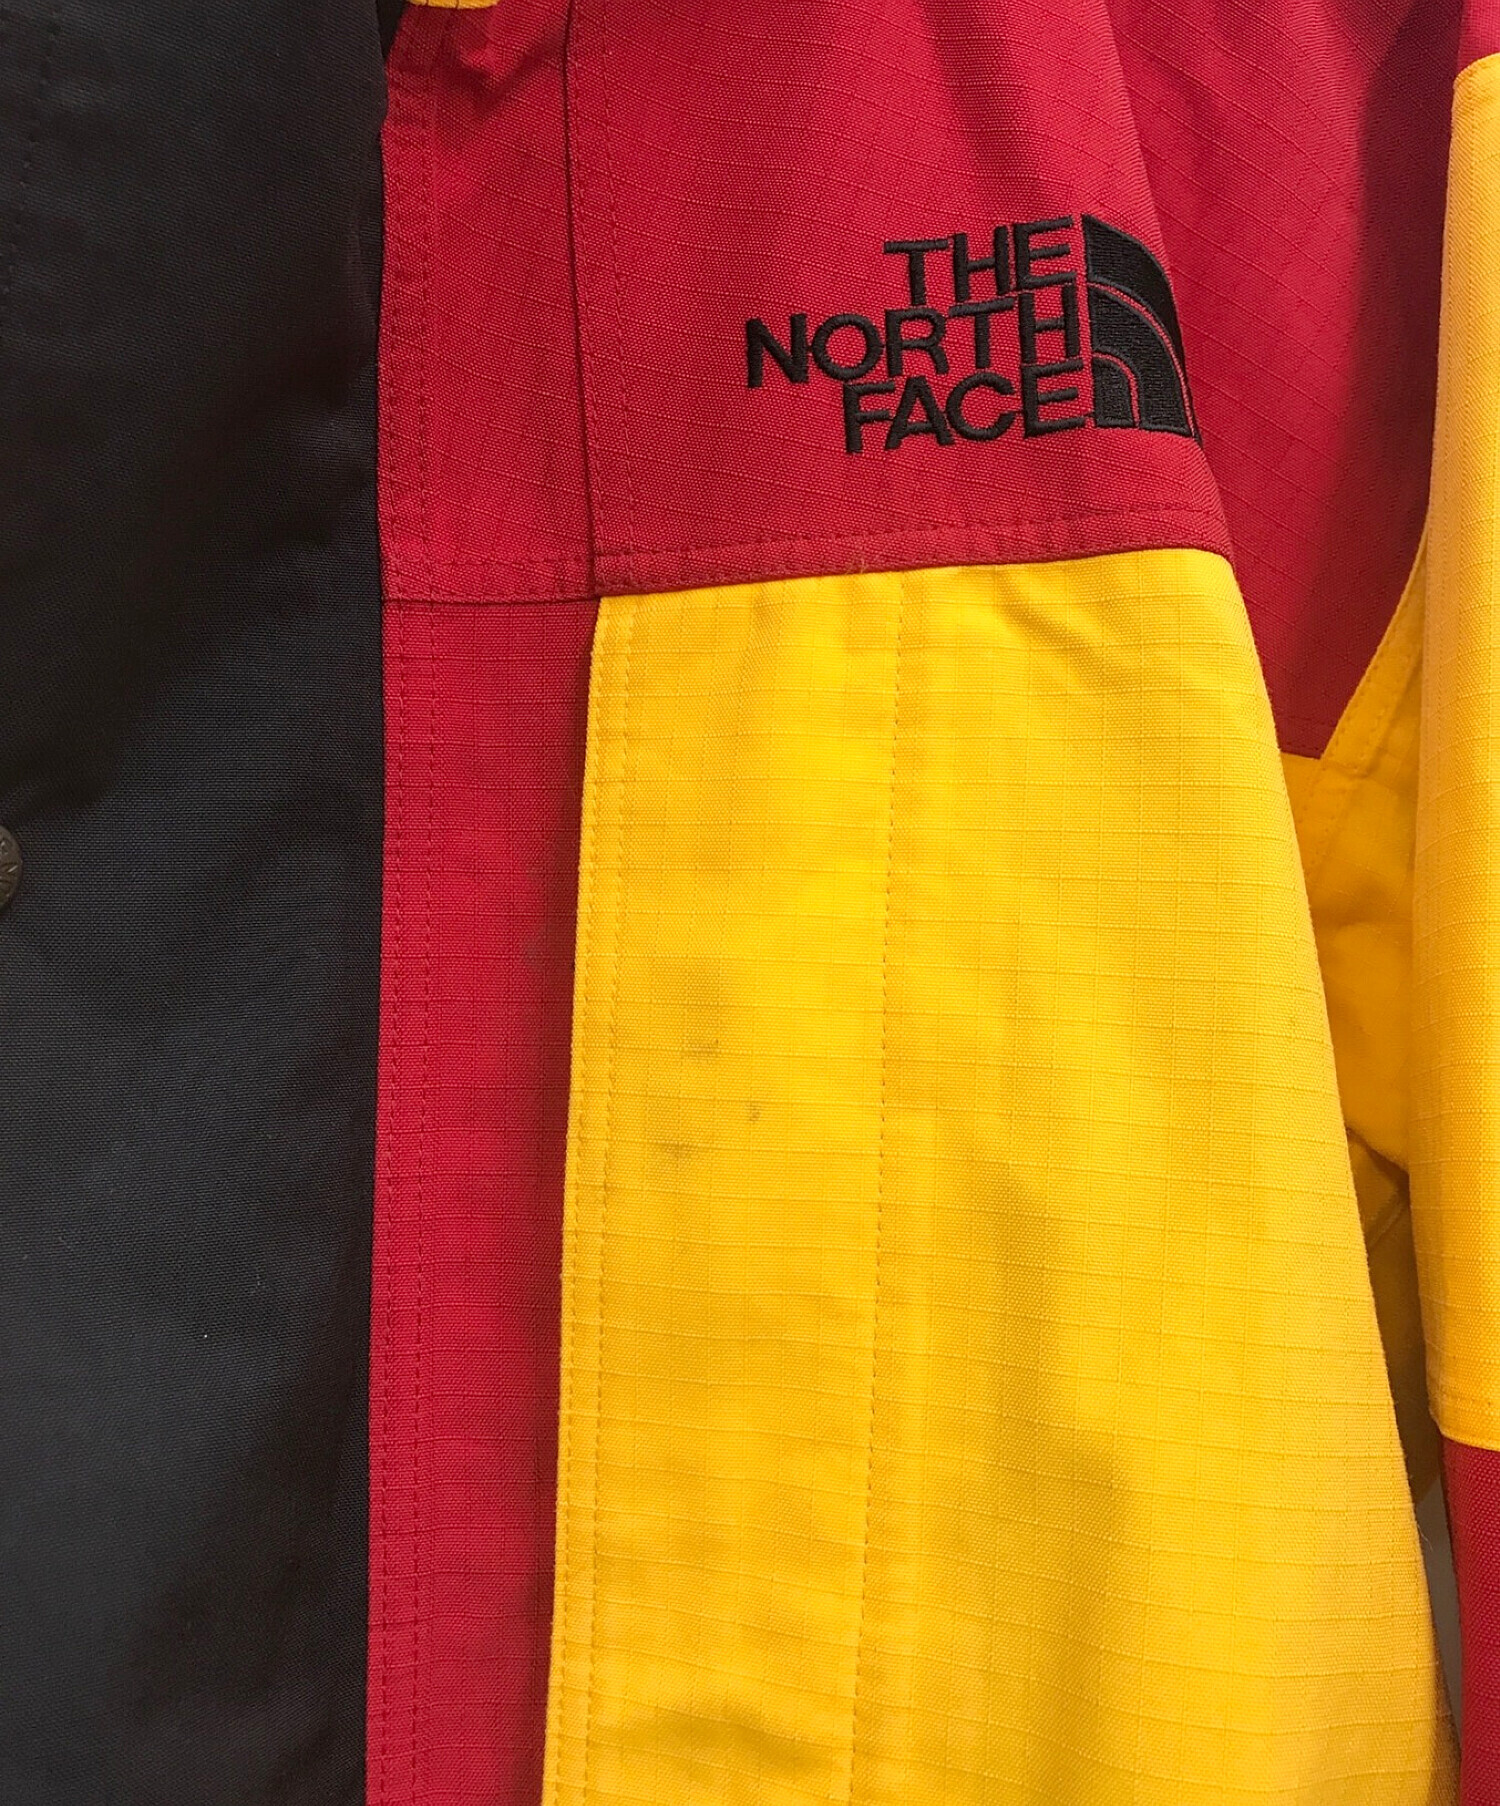 THE NORTH FACE (ザ ノース フェイス) 90’S CORDURA PLUS GORE-TEX MOUNTAIN JACKET /  マウンテンジャケット レッド×イエロー サイズ:L